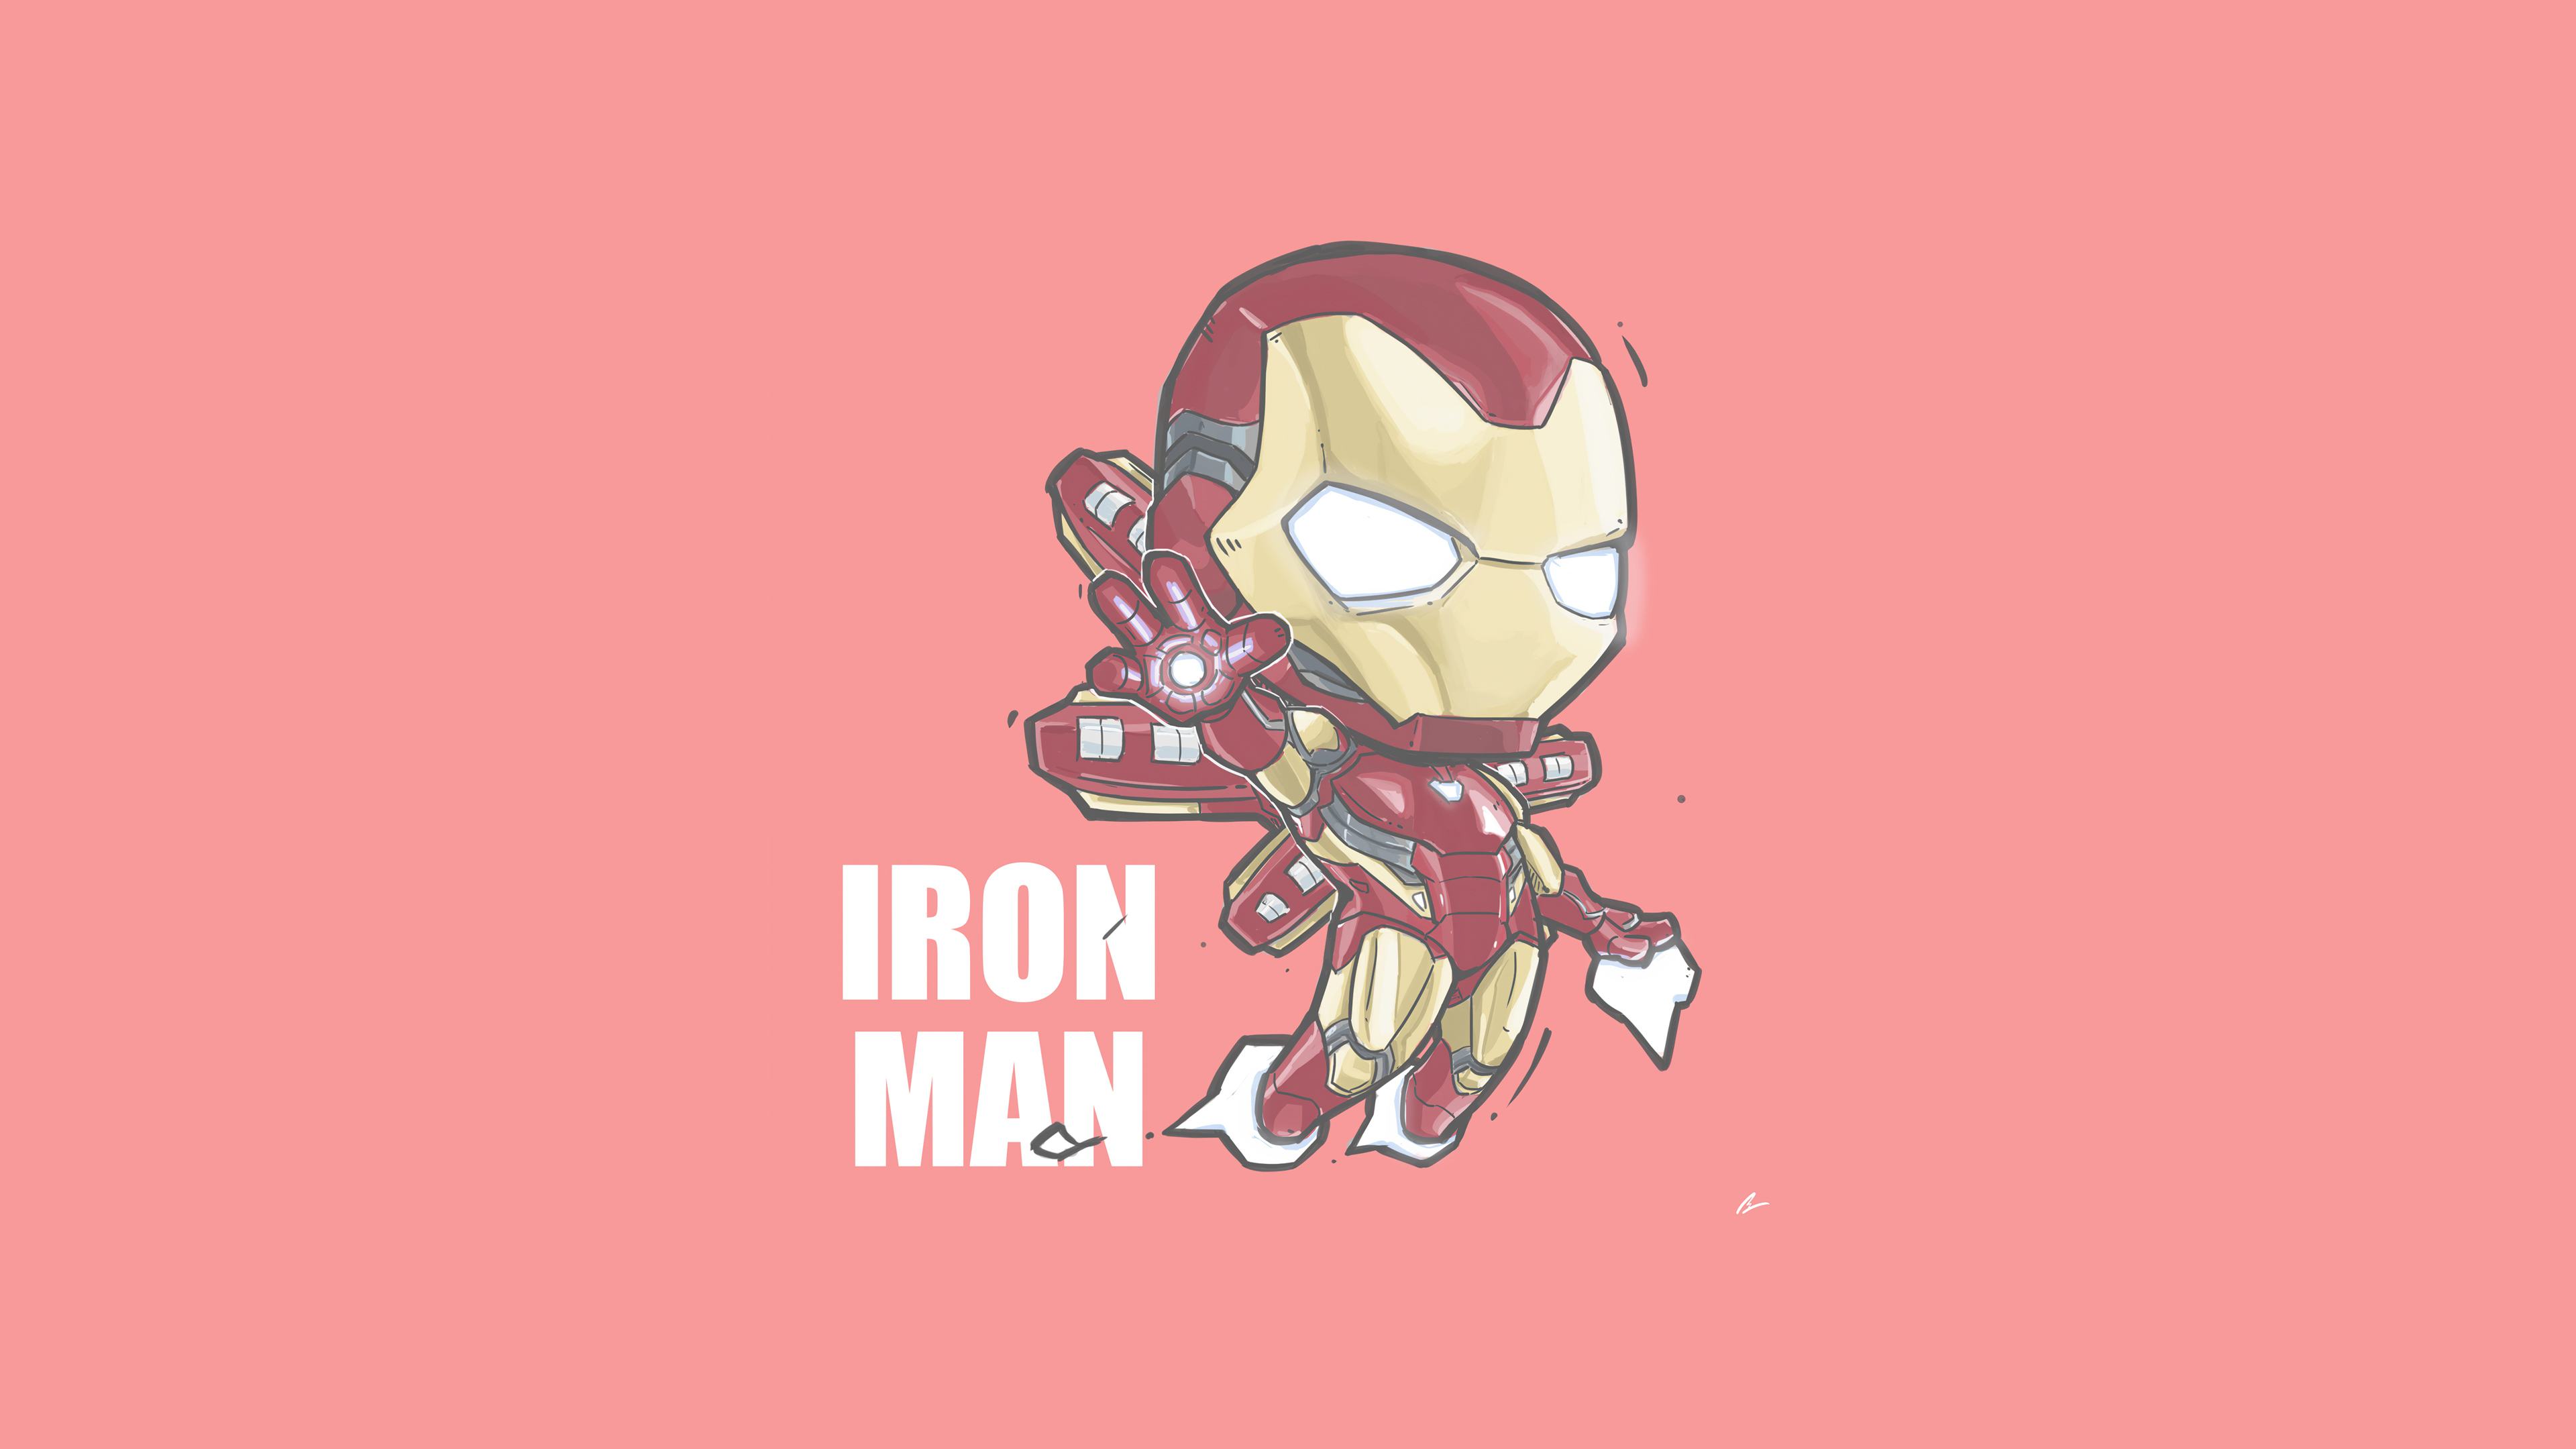 Iron Man Chibi - Hình Ảnh Iron Man Chibi Tuyệt Đẹp - Trung Tâm Đào Tạo Việt  Á